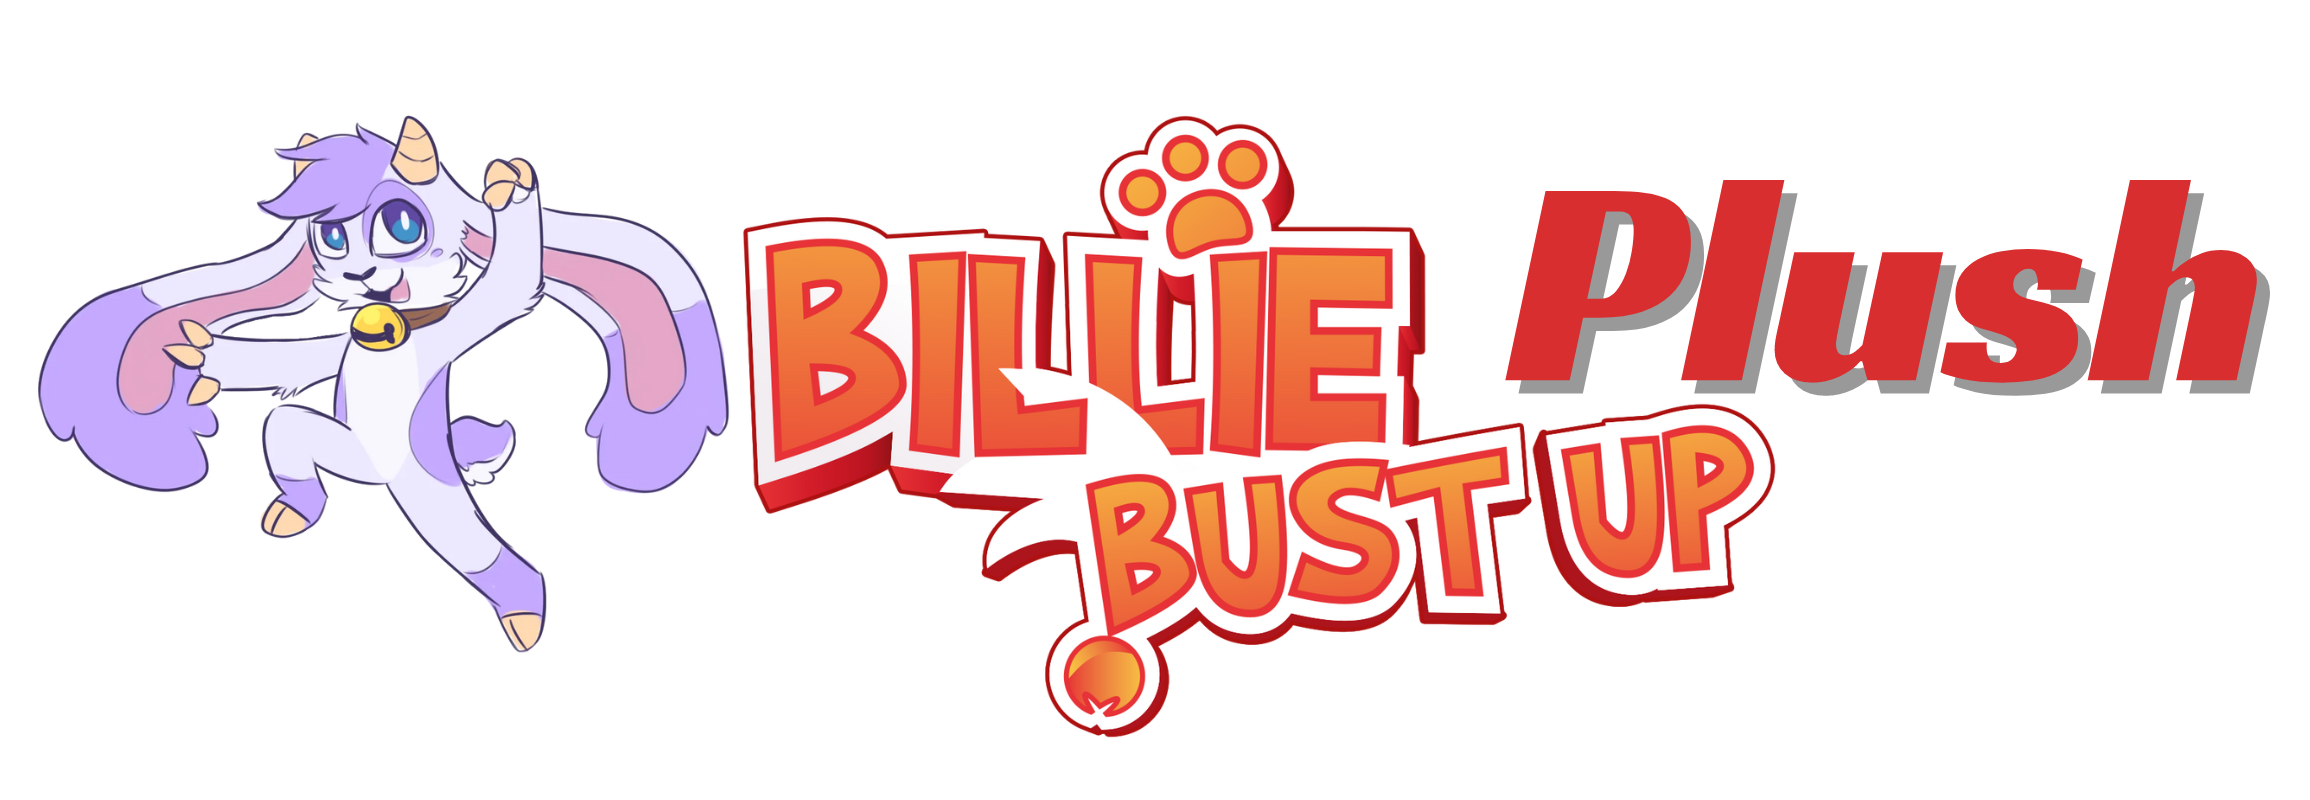 Billie Bust Up plush logo1 - Billie Bust Up Plush